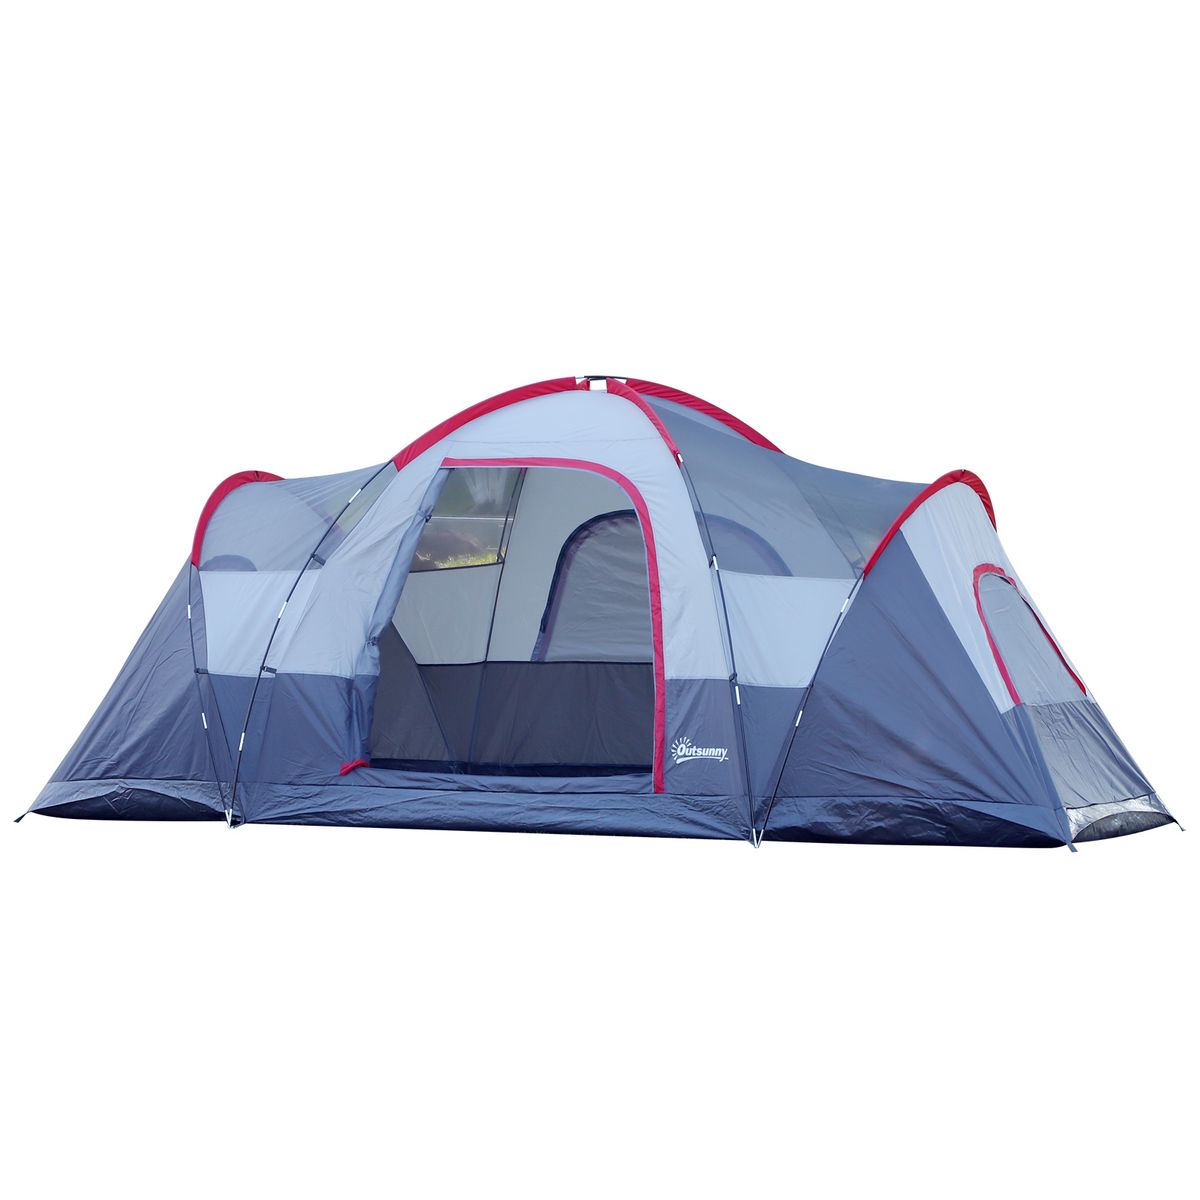 2m en toile Tente pyramidale de camping de grande tente tipi pour 1 à 2  personne